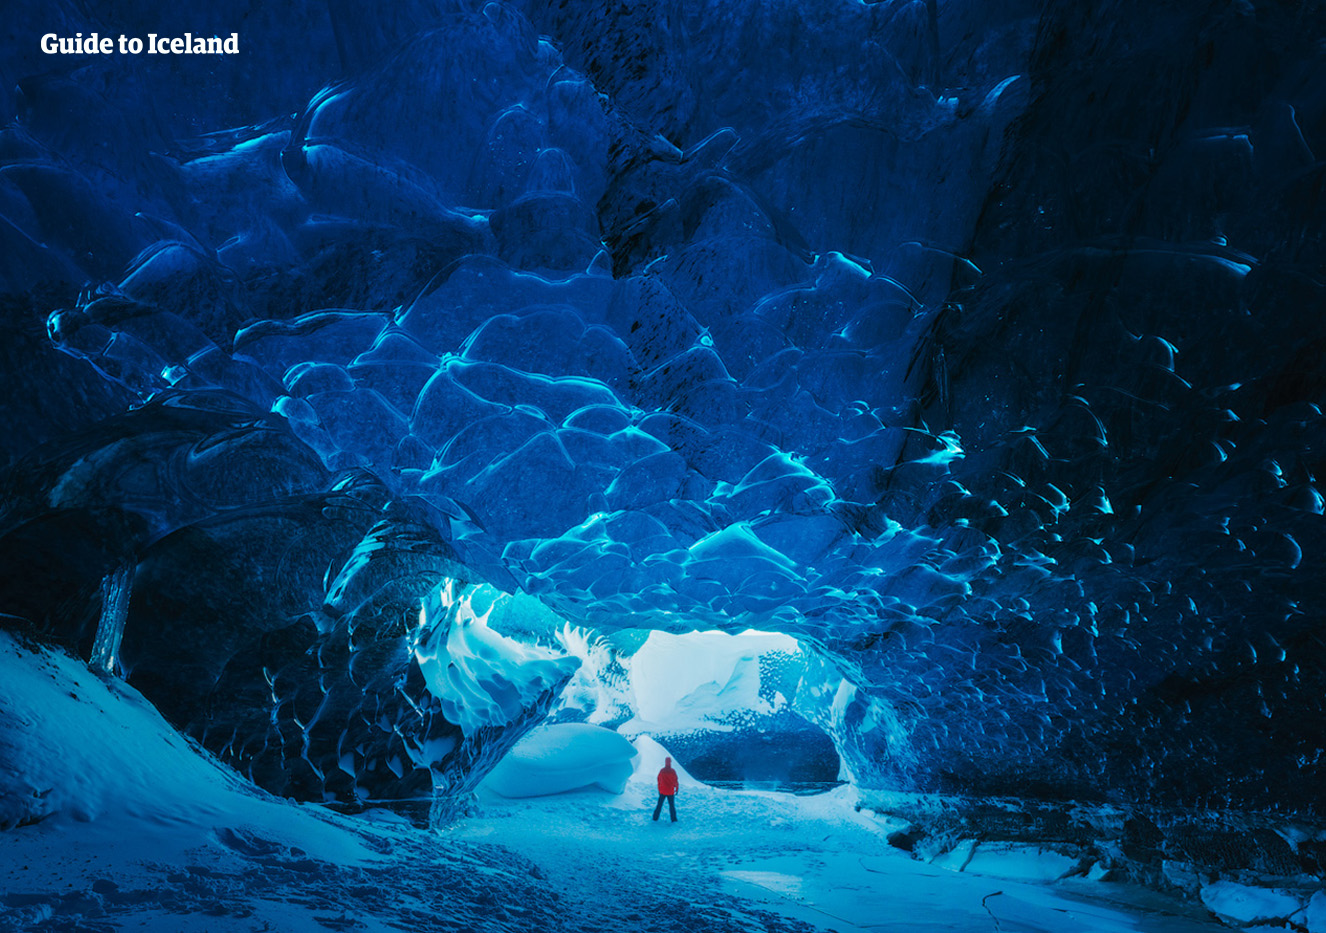 Den blændende blå farve inde i en af Islands isgrotter.